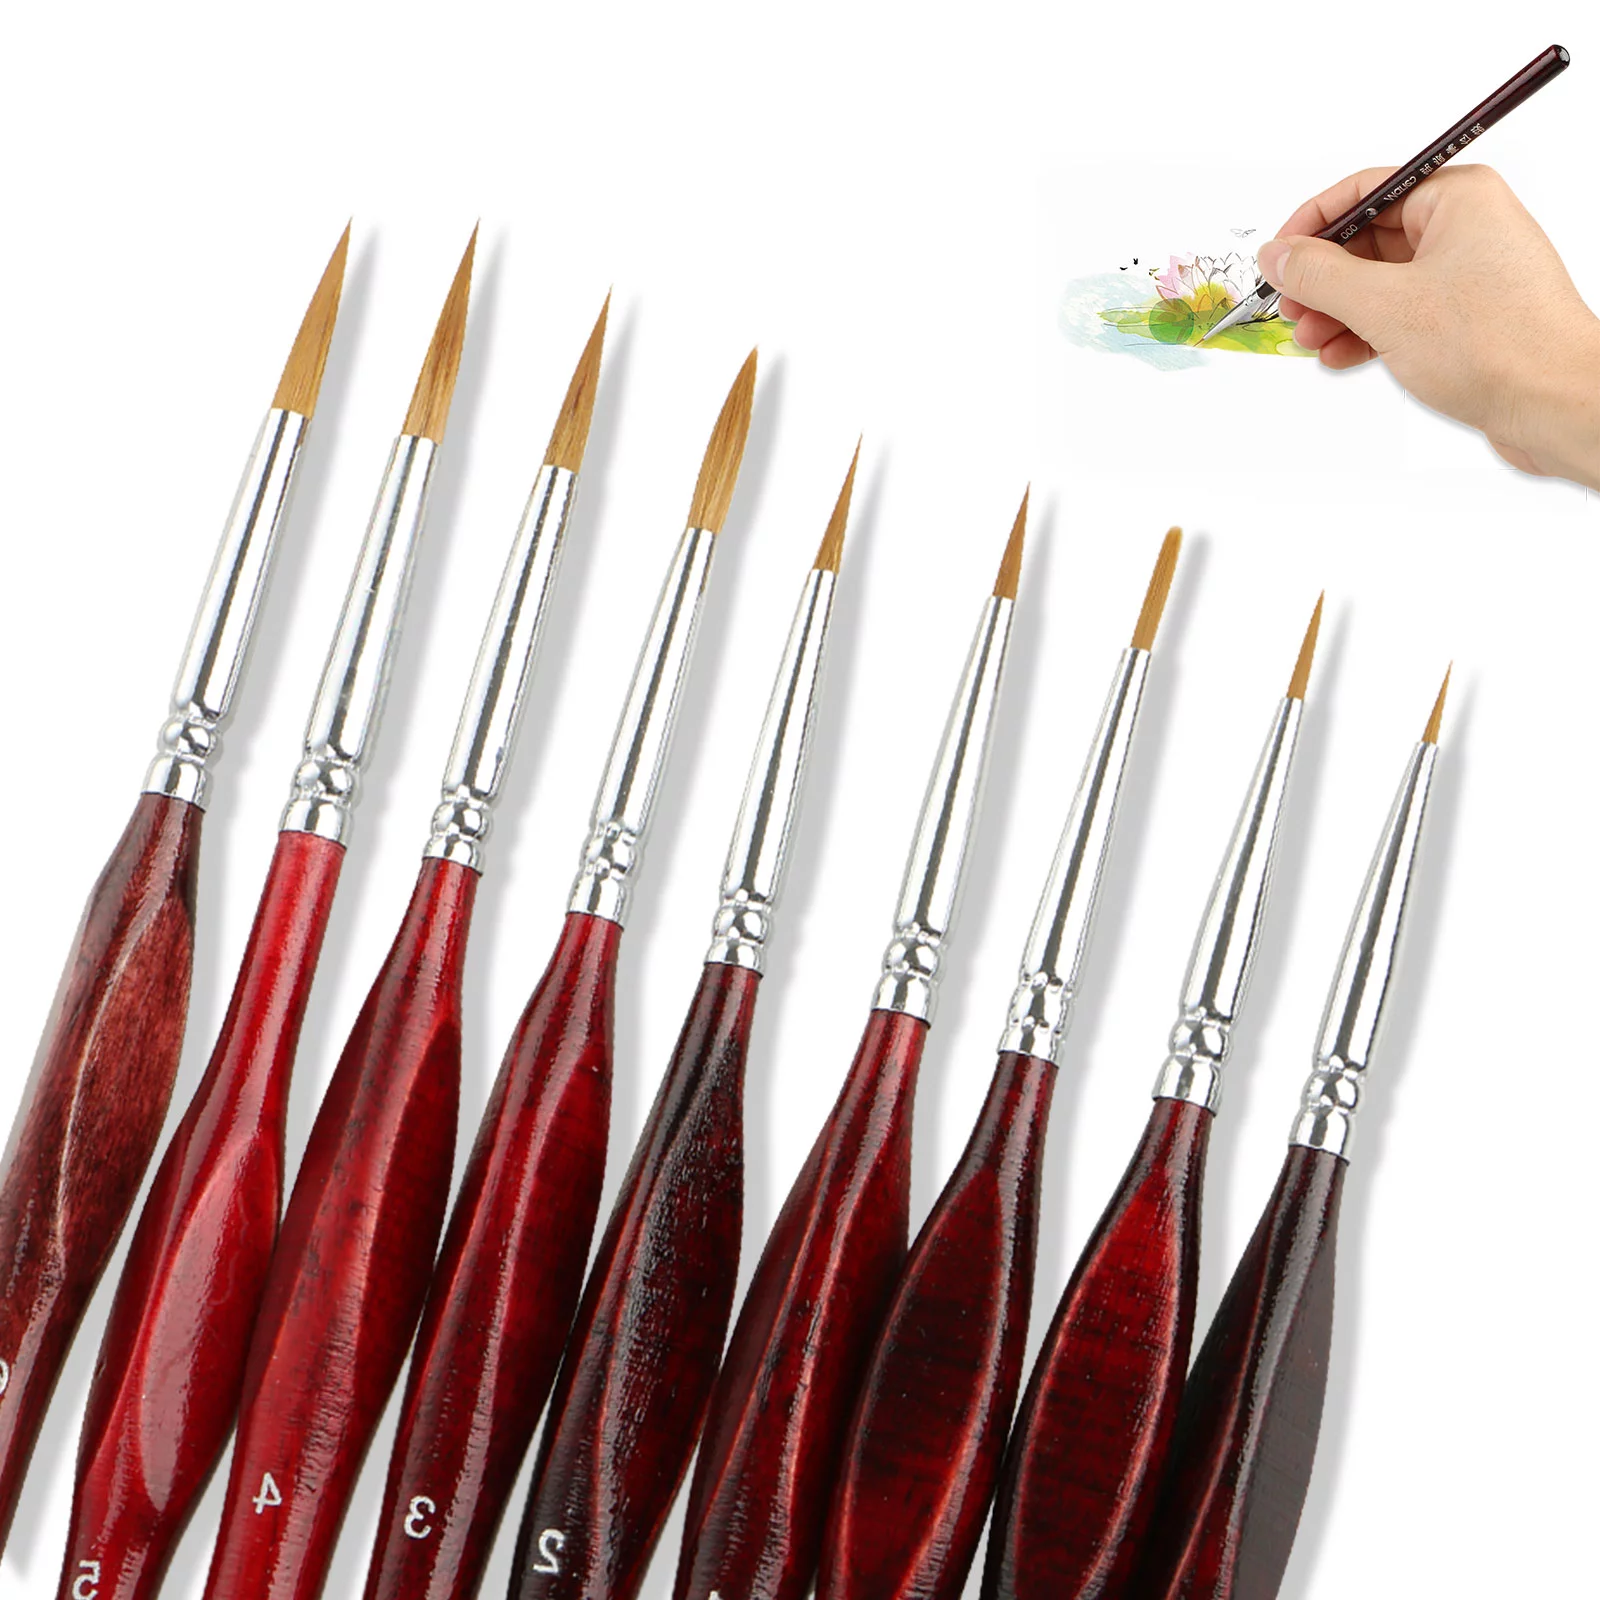 Miniature Paint Brushes, 11Pcs Nail Art Brushes - Fine Detail Paint Brush  Set